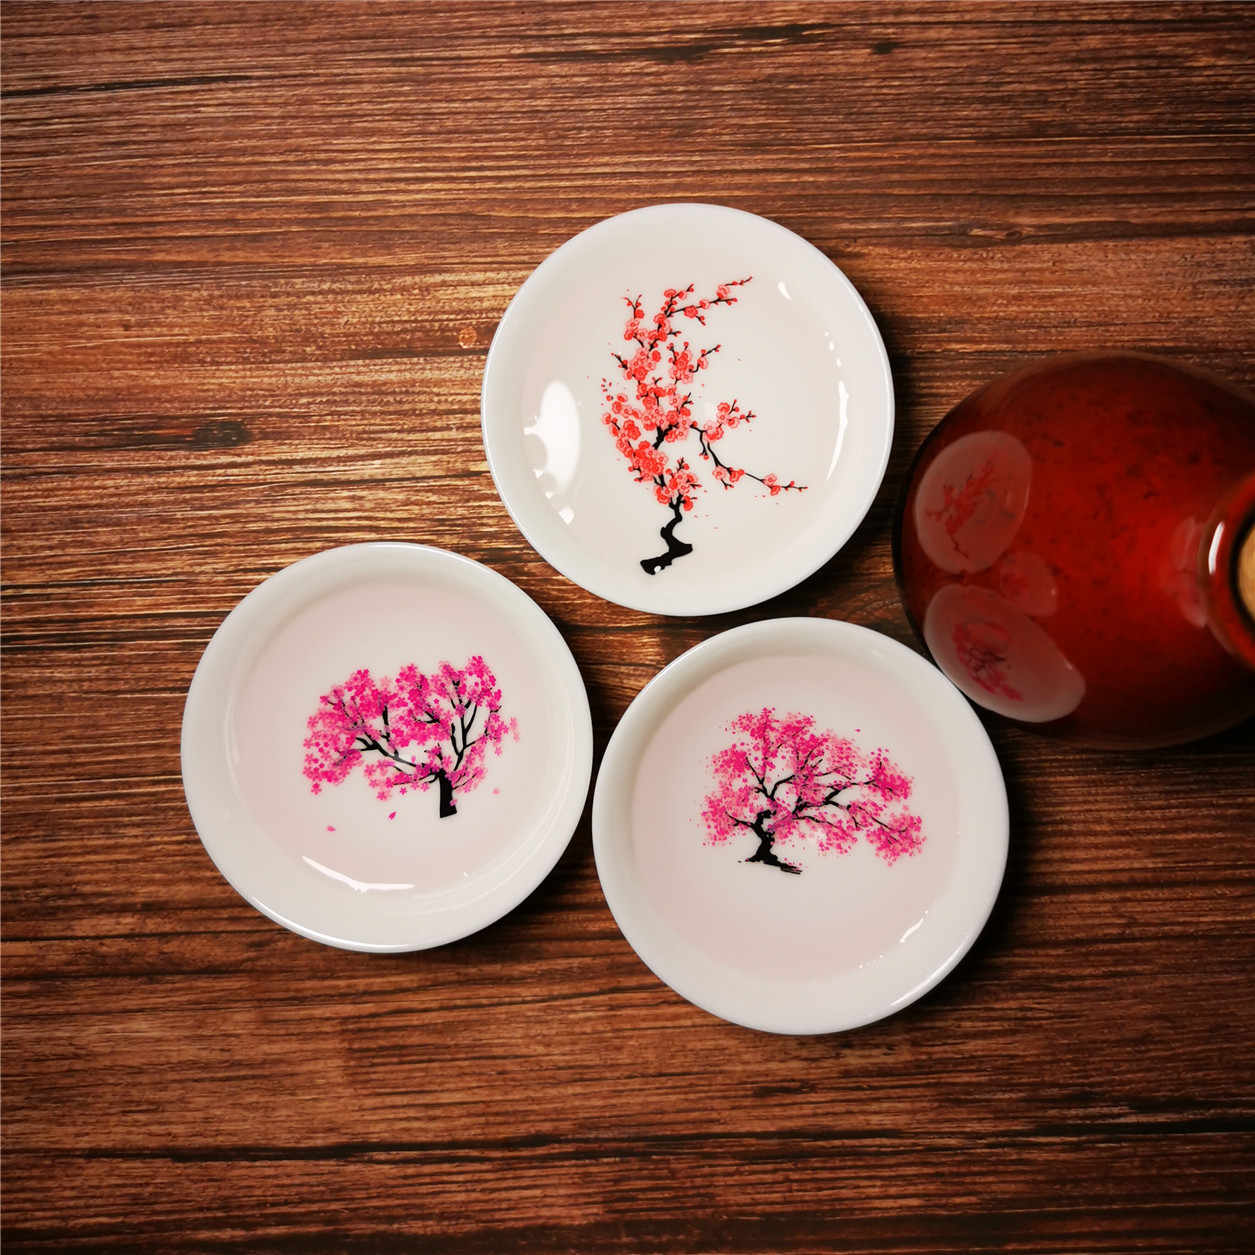 Hương vị và màu sắc của trà Sakura vô cùng đặc biệt và được nhiều người yêu thích